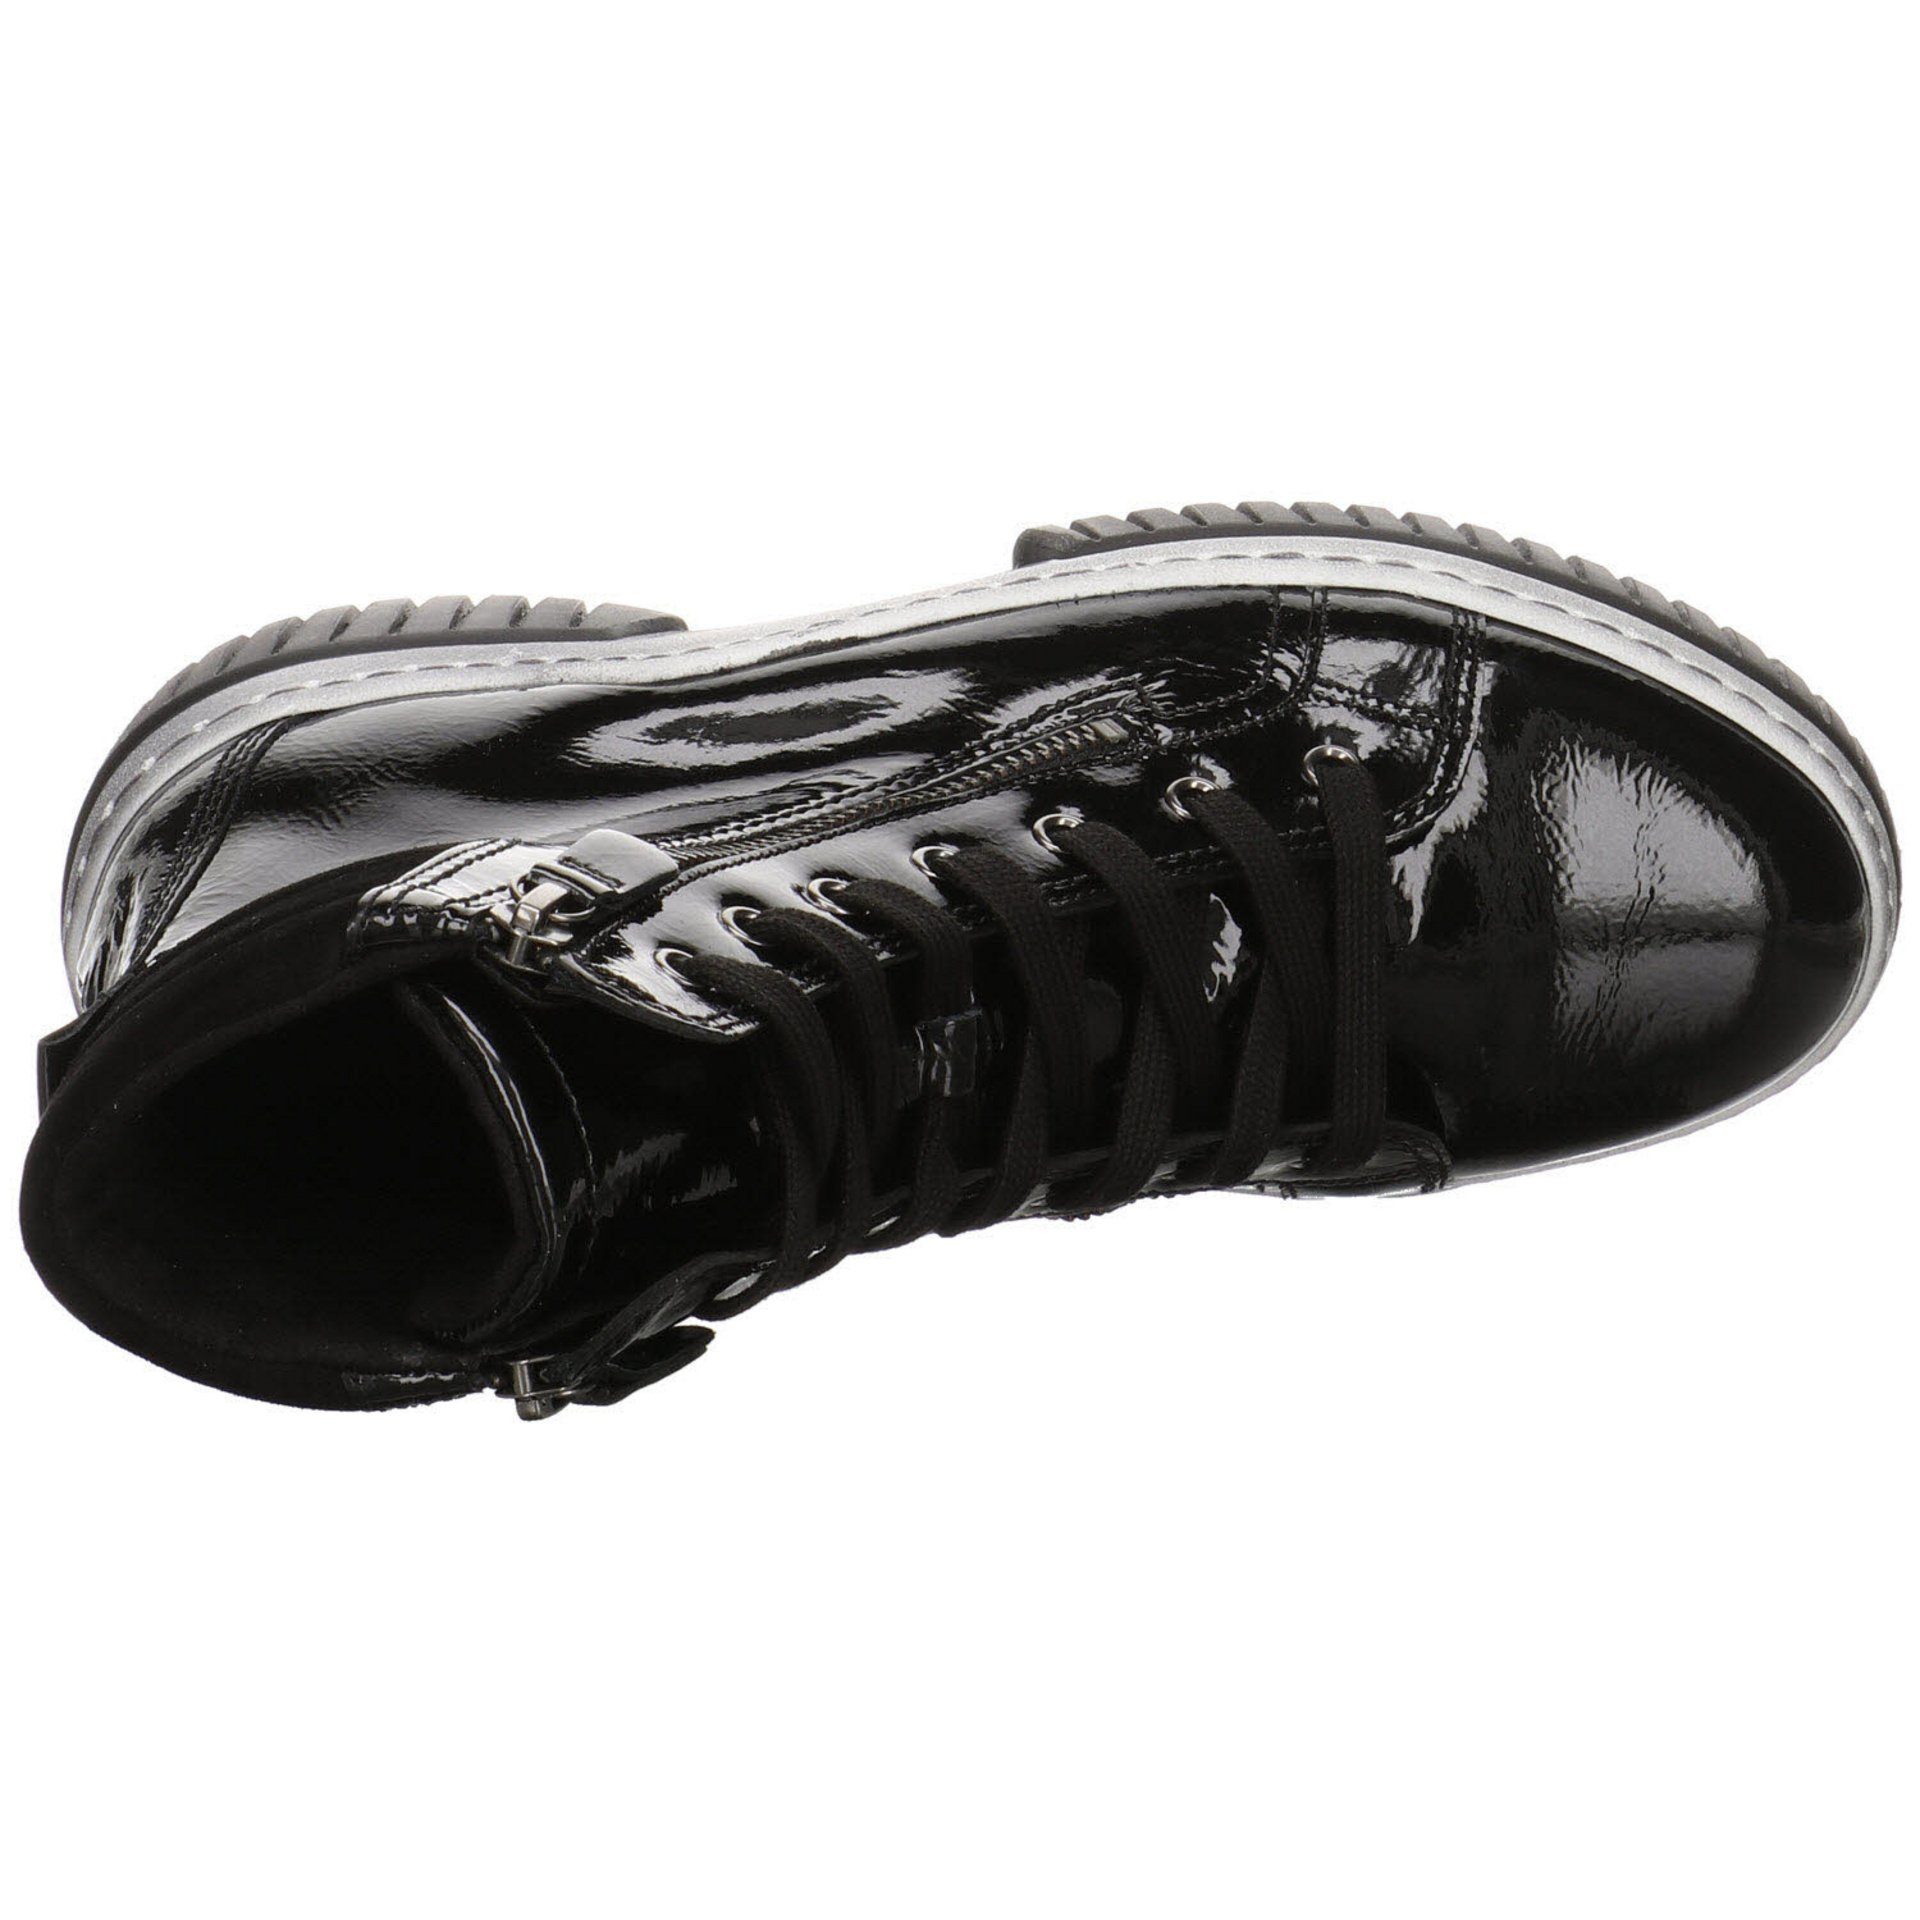 Gabor Damen Boots schwarz(altsilber) Freizeit Schnürstiefel Elegant Lackleder Schuhe Stiefeletten